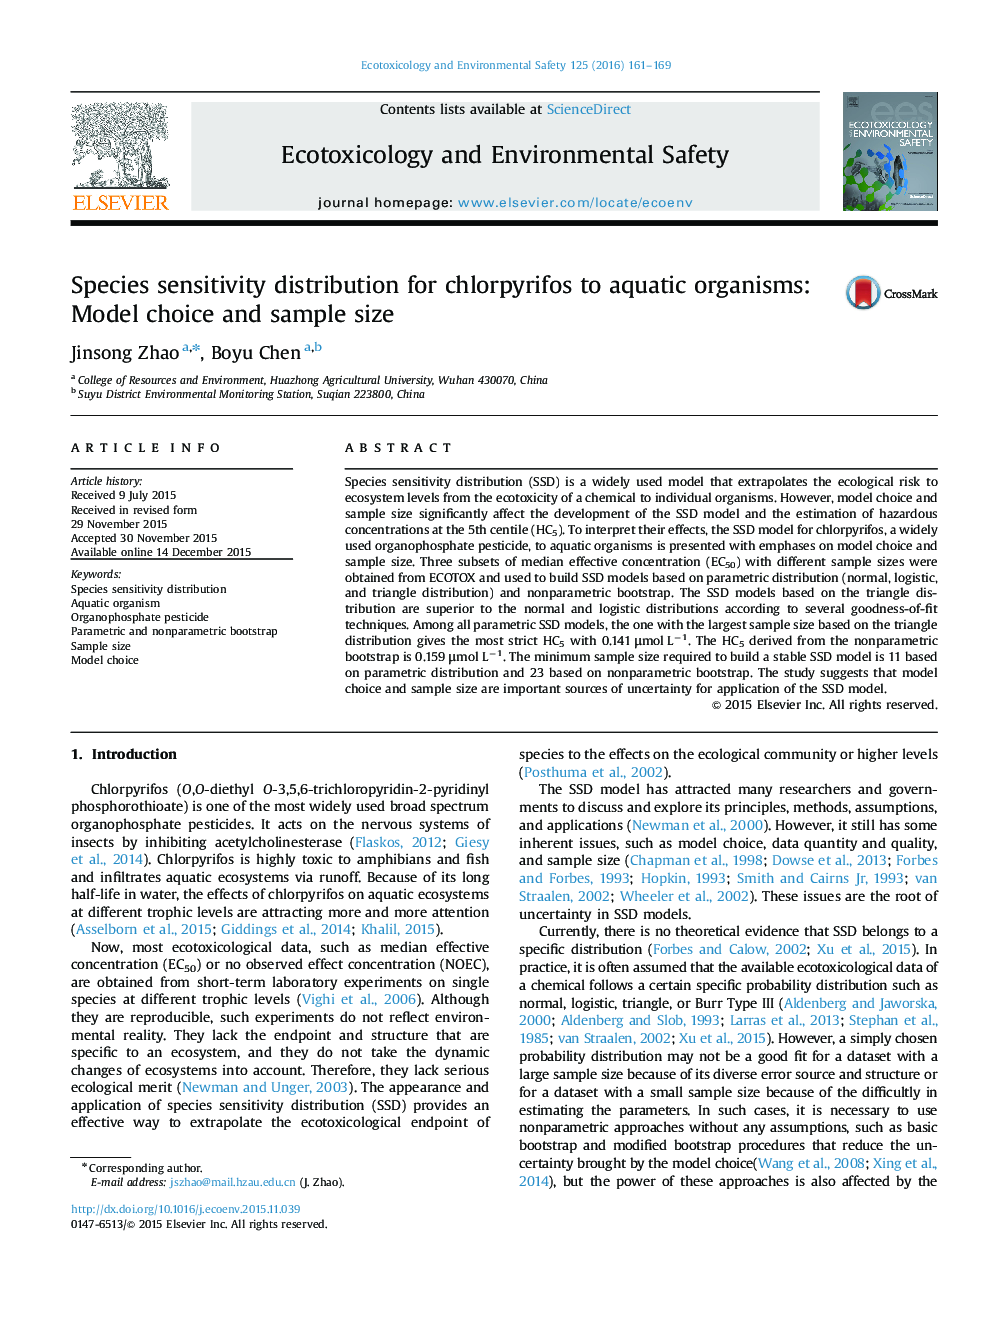 توزیع حساسیت گونه ها برای کلرپیریفوس به موجودات آبزی: انتخاب مدل و اندازه نمونه 